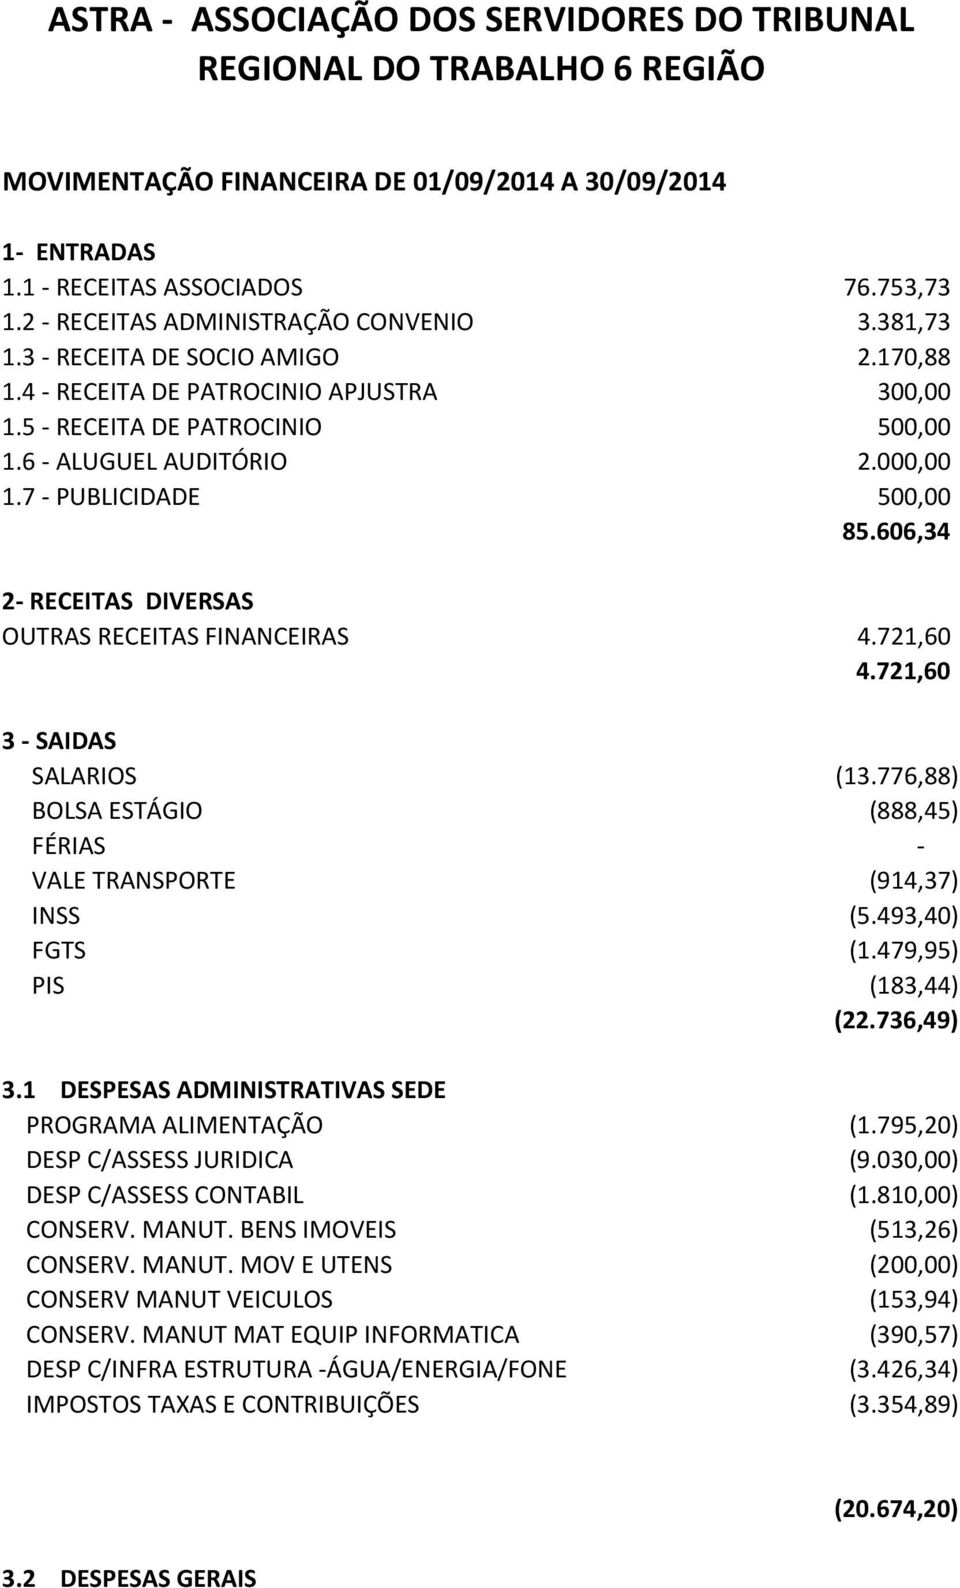 7 - PUBLICIDADE 500,00 85.606,34 2- RECEITAS DIVERSAS OUTRAS RECEITAS FINANCEIRAS 4.721,60 4.721,60 3 - SAIDAS SALARIOS (13.776,88) BOLSA ESTÁGIO (888,45) FÉRIAS - VALE TRANSPORTE (914,37) INSS (5.